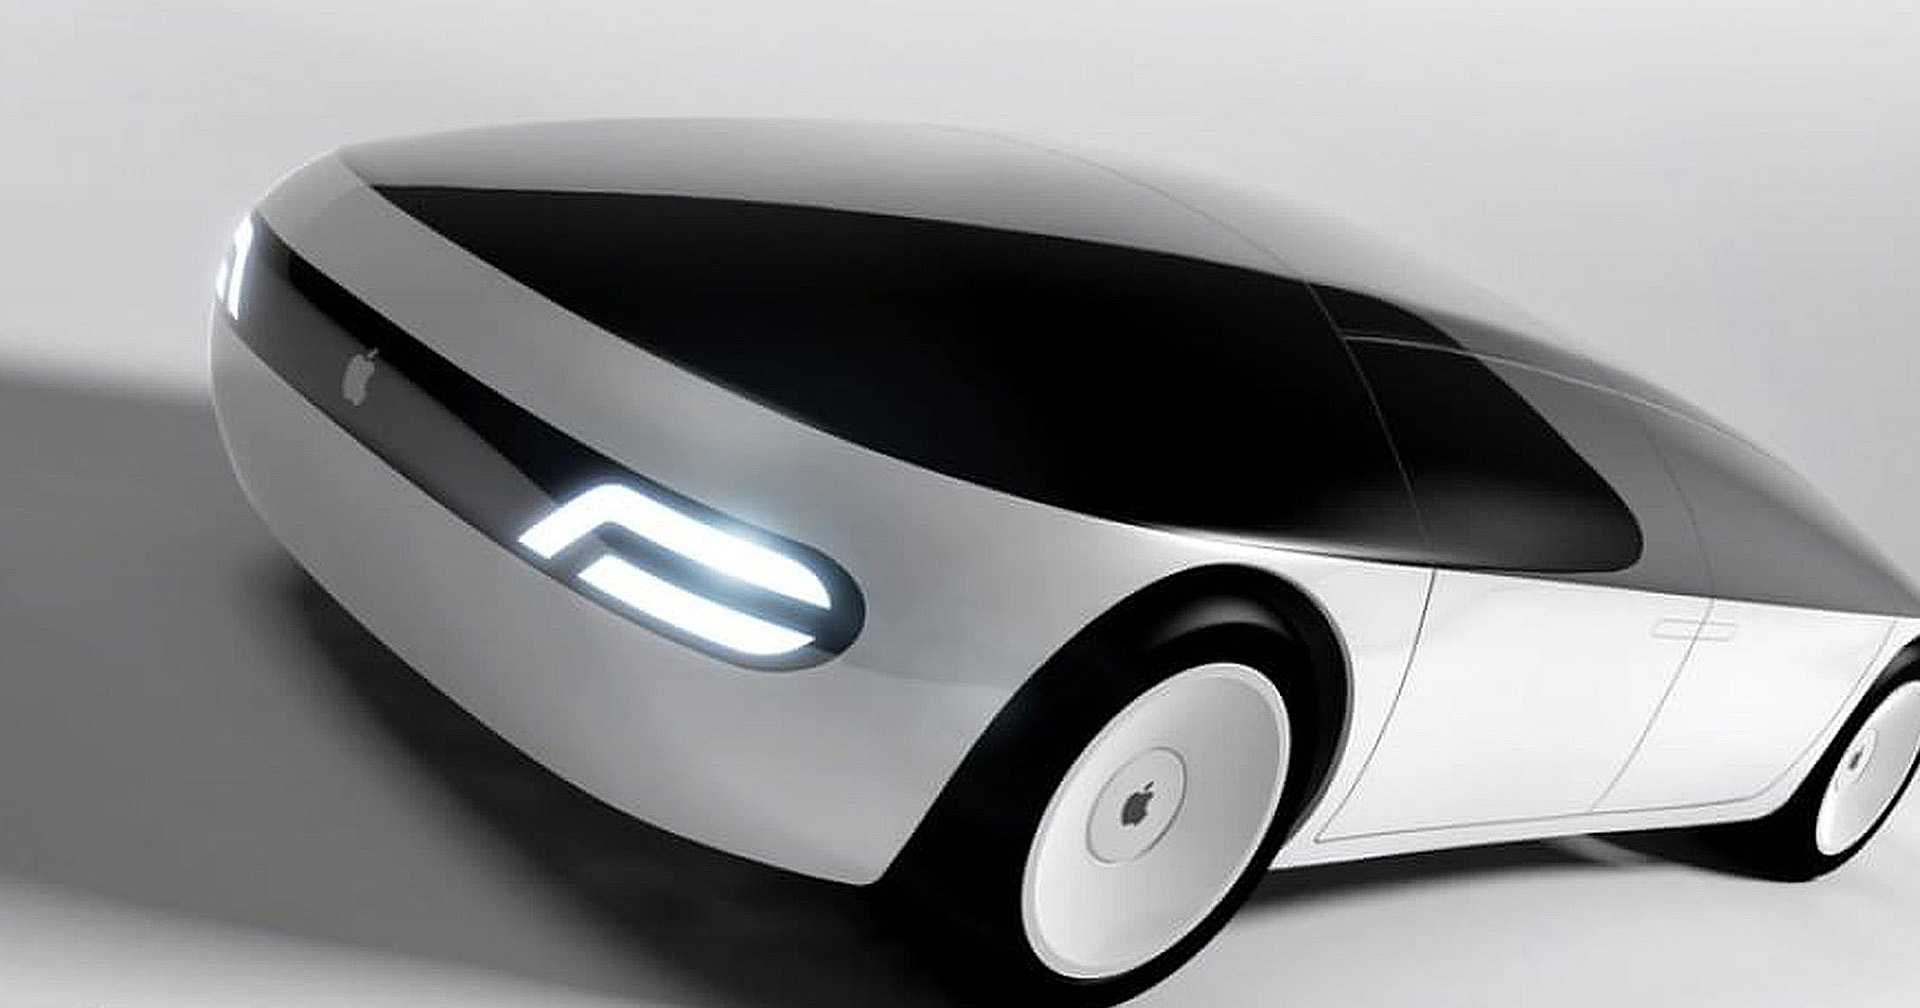 การผลิต Apple Car ส่อแววสะดุด : การเจรจาระหว่าง Apple และ Hyundai อาจหยุดลงชั่วคราว